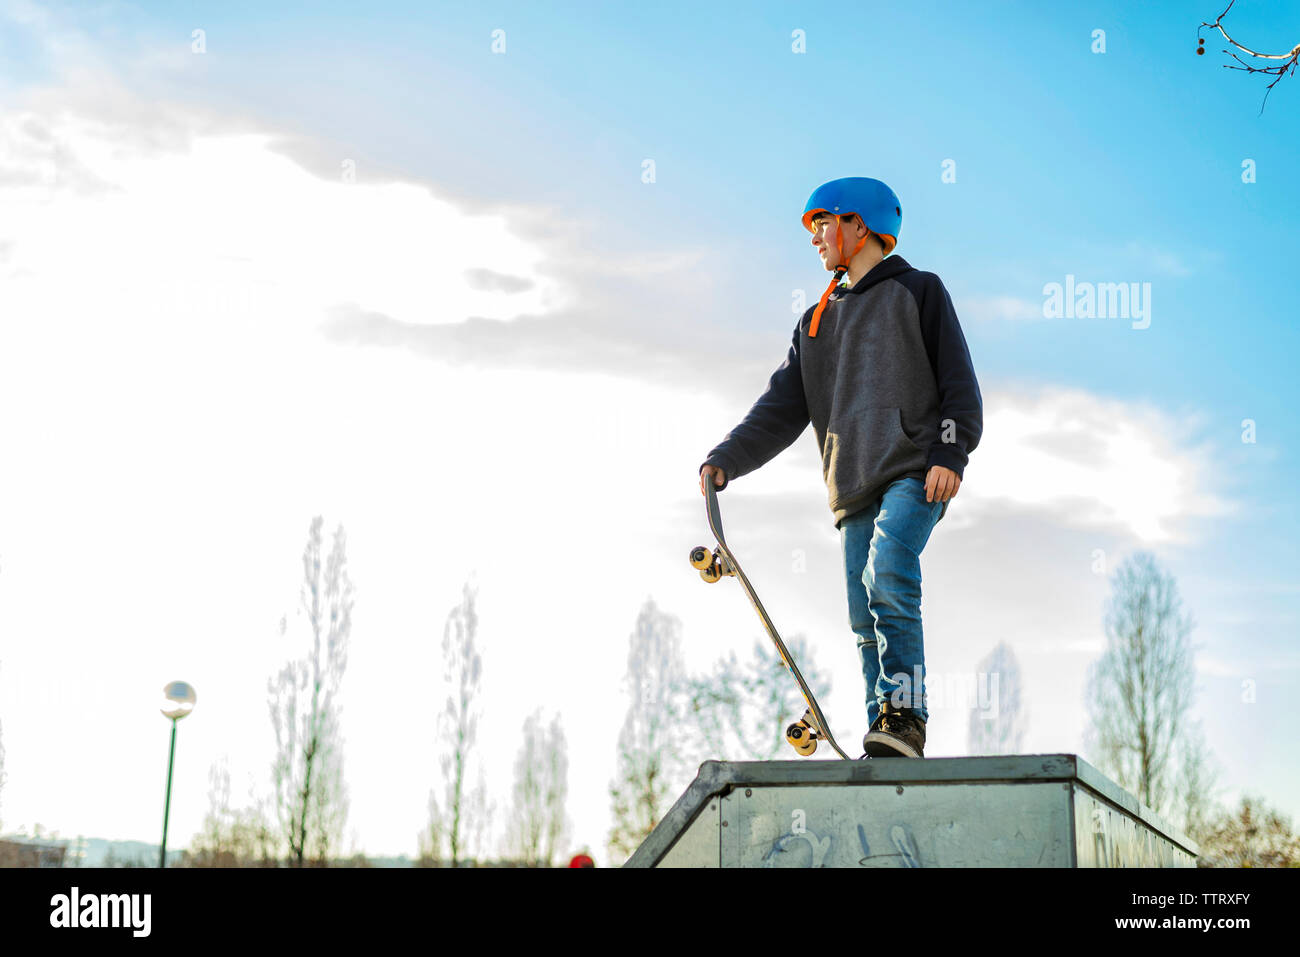 Vue faible de jeunes patineurs sur une rampe de skate prêt à effectuer un tour Banque D'Images